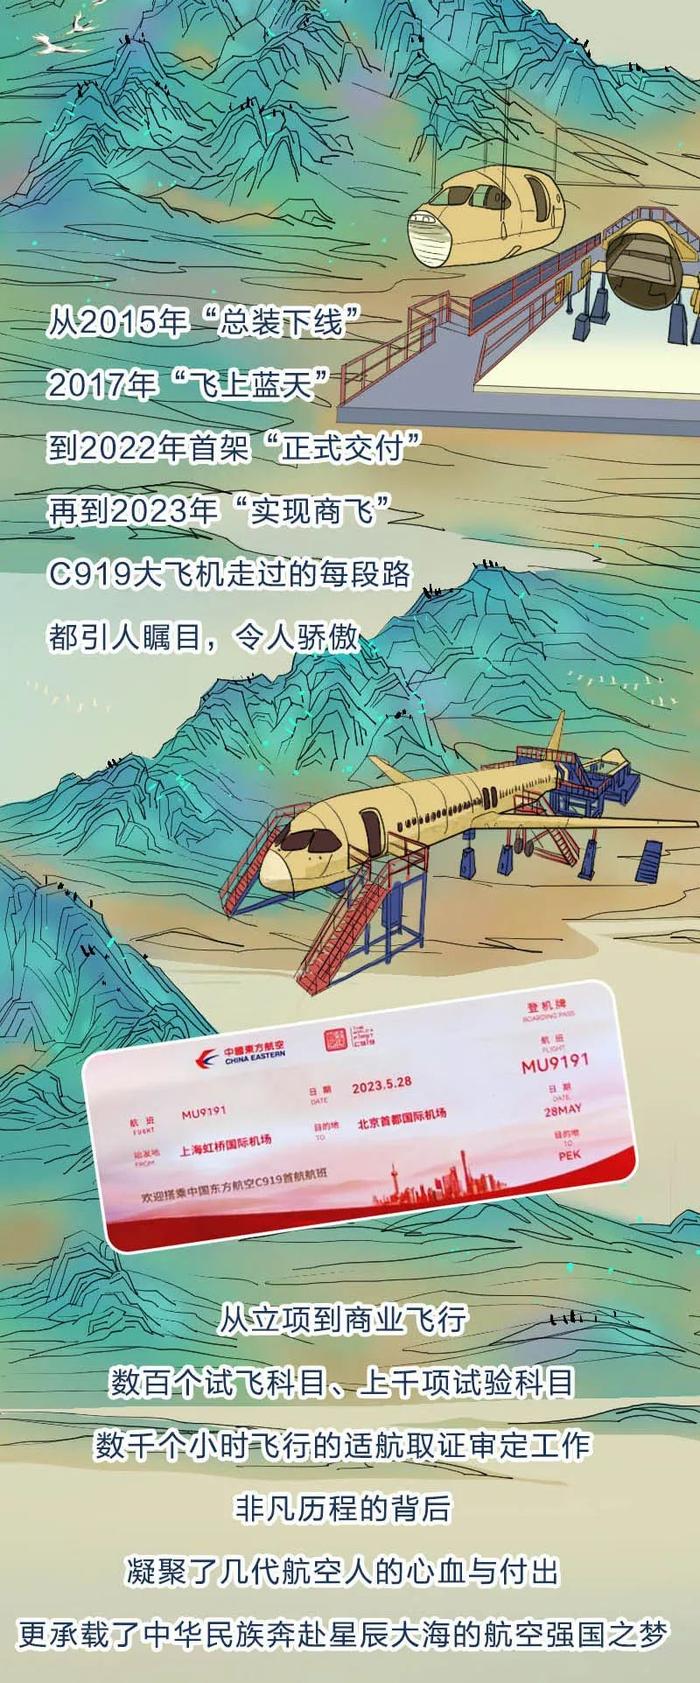 “大国重器版”千里江山图——从新年贺词看中国科技硬实力